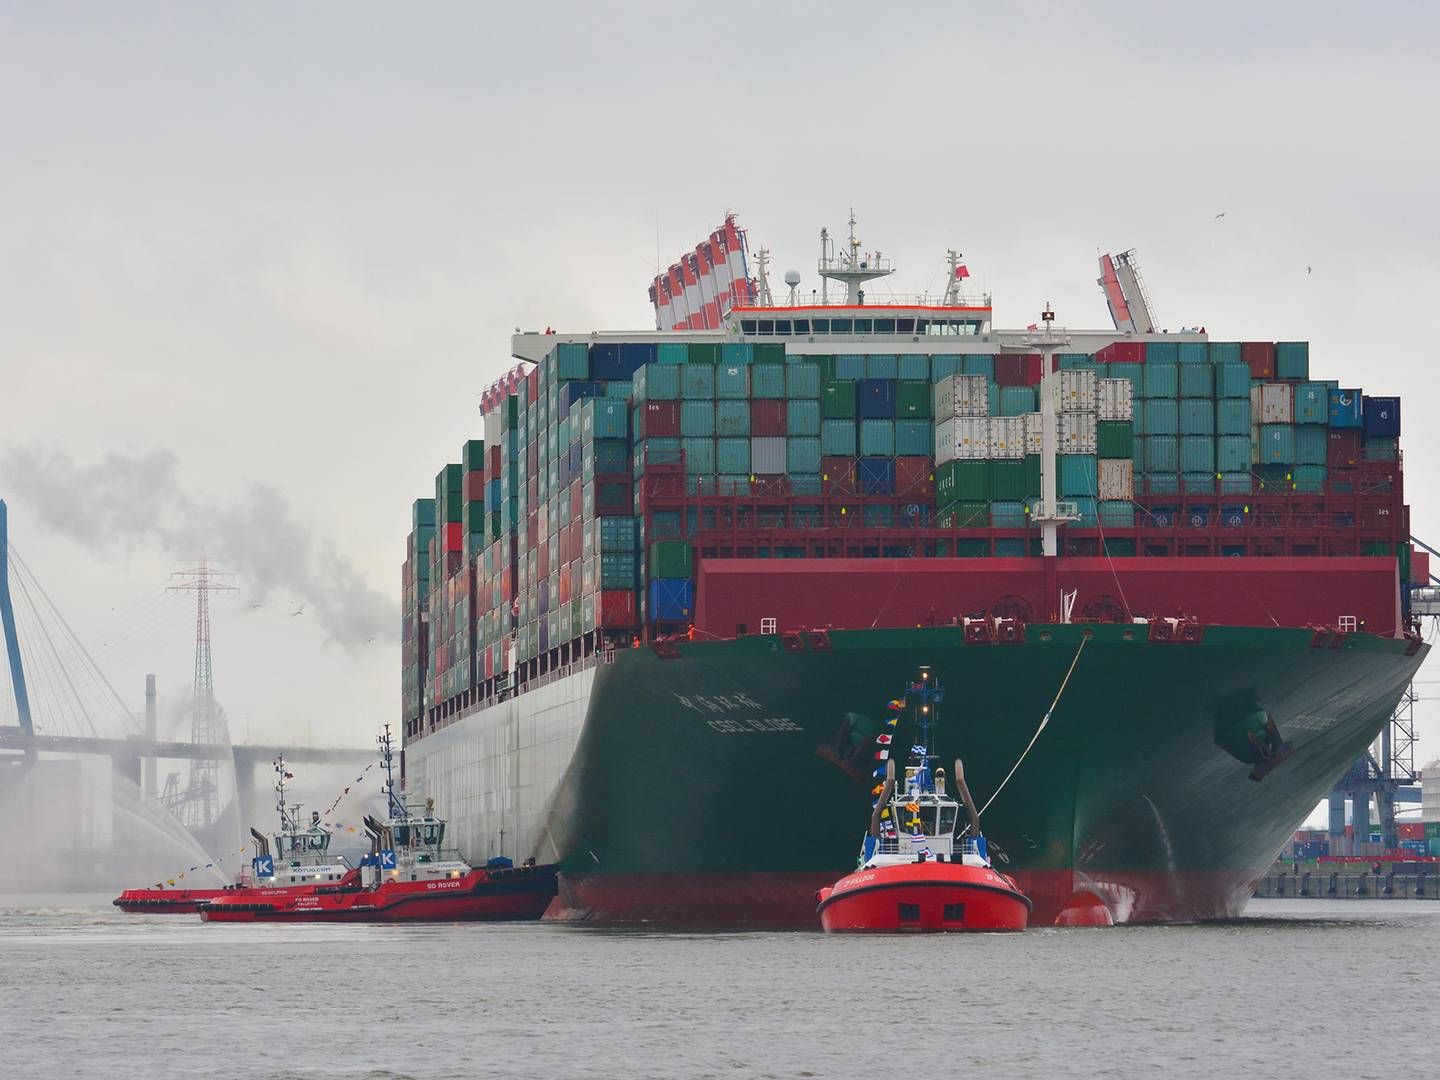 Foto: Pr / Port of Hamburg